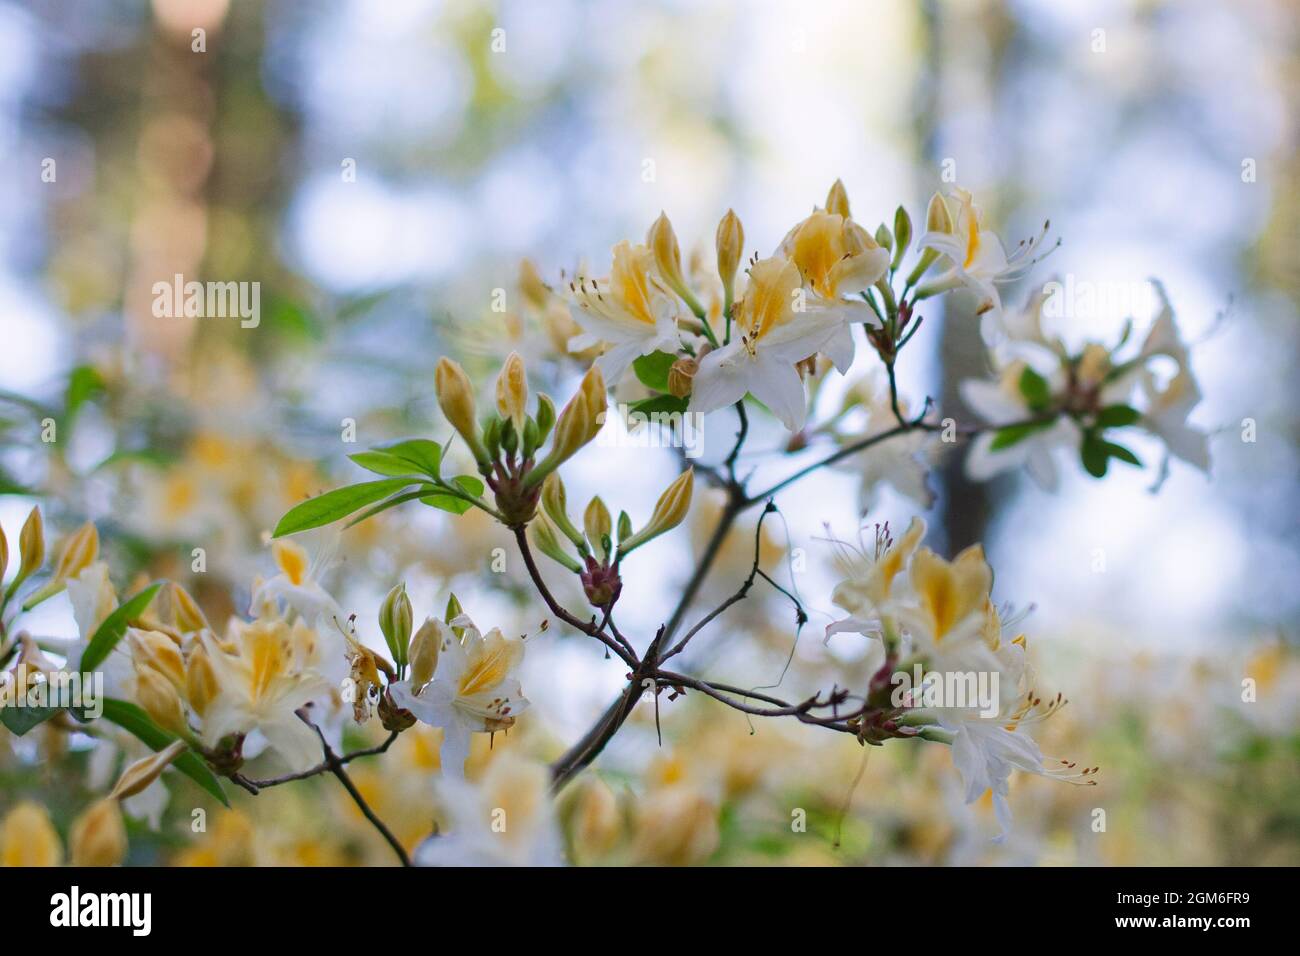 Nahaufnahme eines Blütenzweiges. Weiße und gelbe Blüten, Rhododendron-Nordlichter, in einem Wald. Bäume und blauer Himmel im Hintergrund. Stockfoto